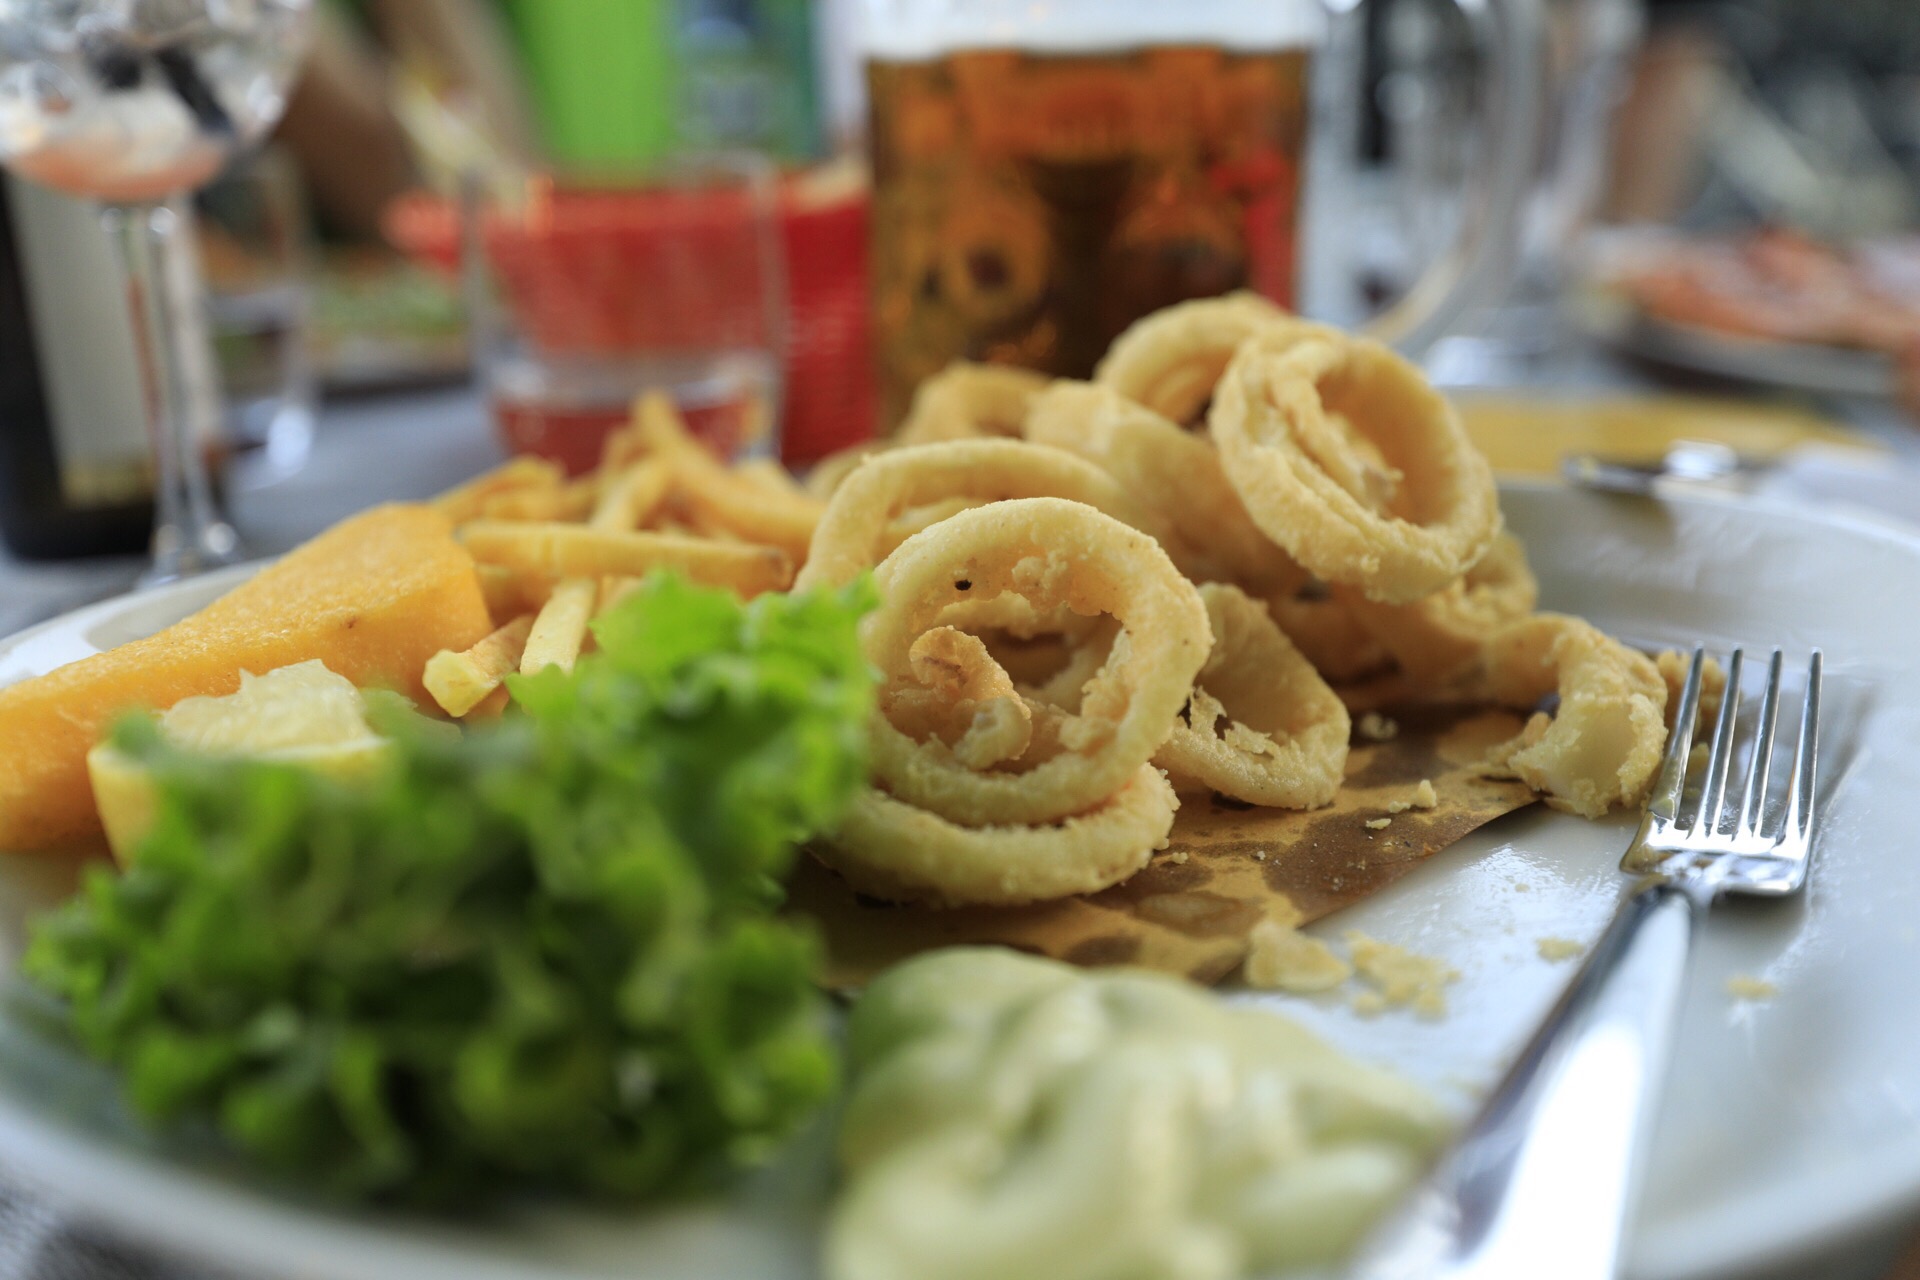 Salat, Fritten und Scampi gehören zu jedem Bibione-Besuch, genauso wie eine gepflegte Runde im Sala Giochi ums Eck. (Foto: Andreas Wanda)